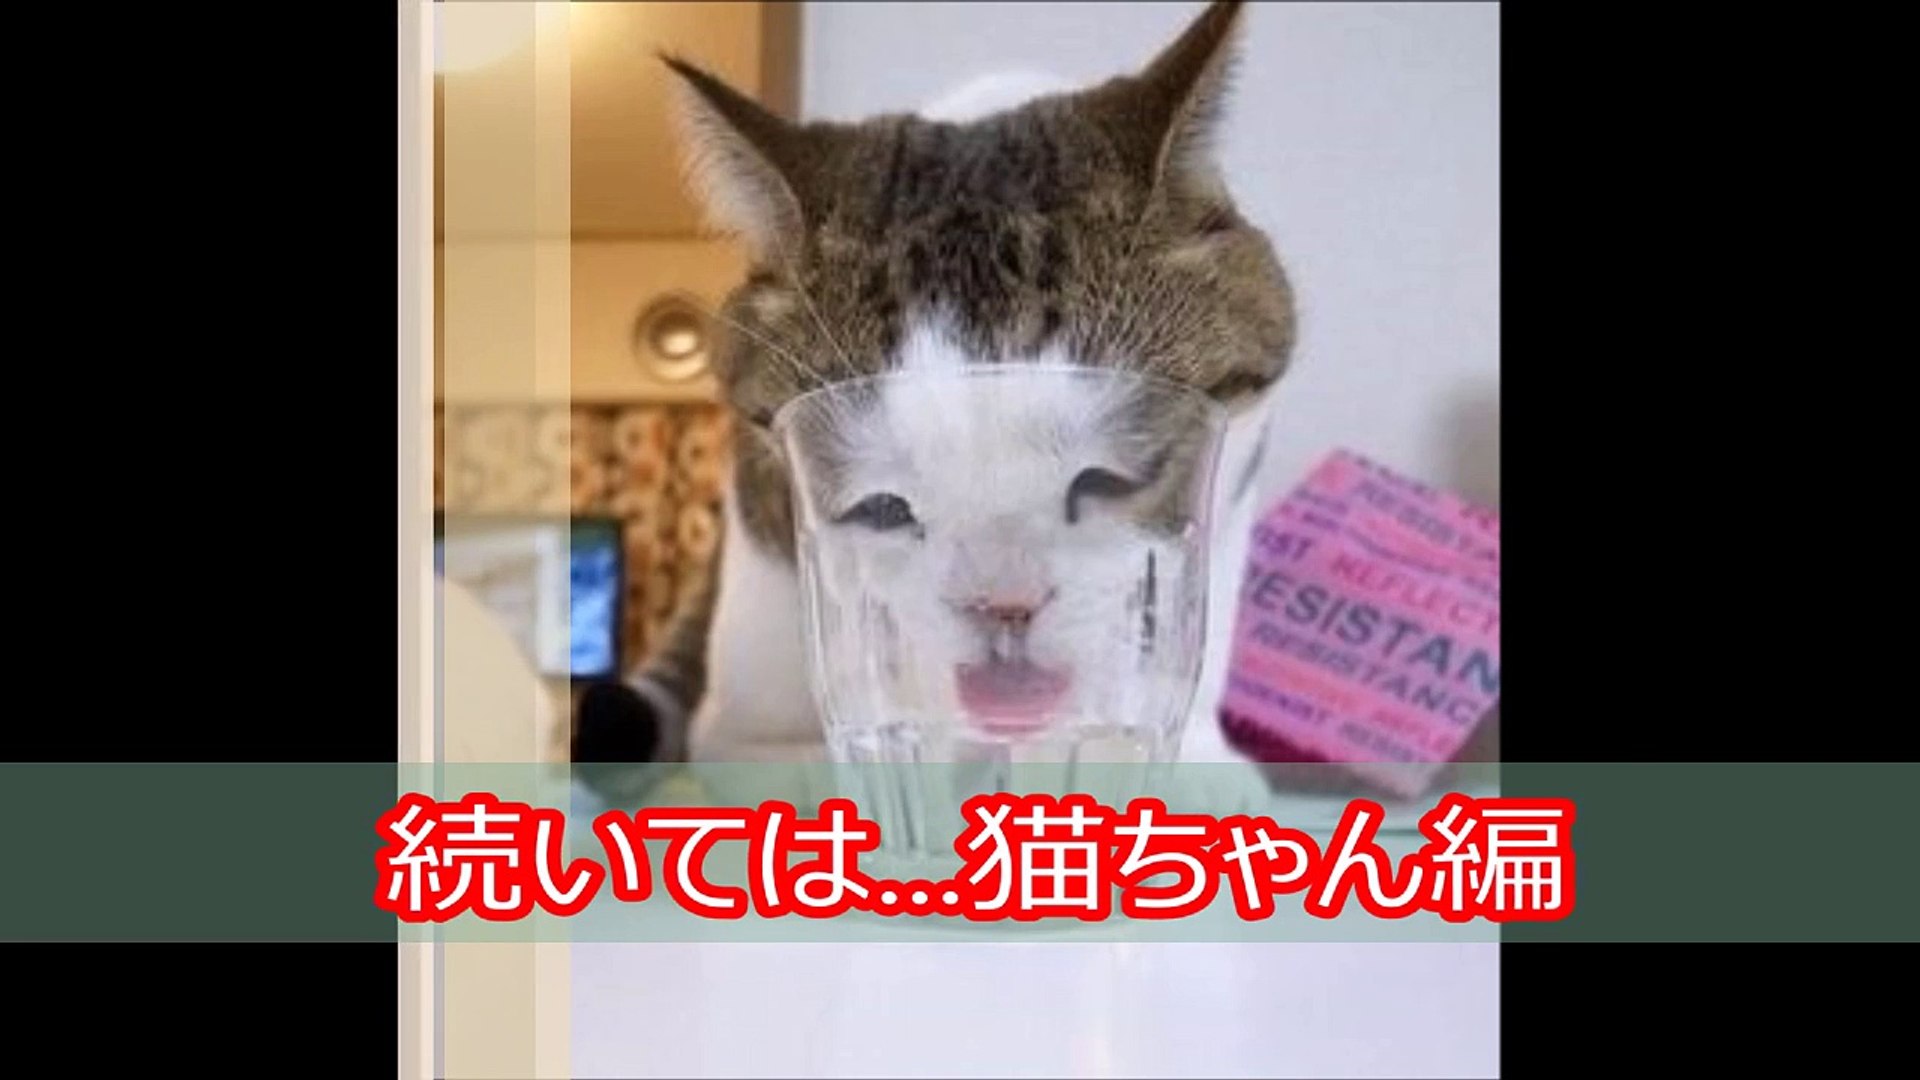 ボケて 腹筋崩壊おもしろ猫bokete画像集 猫が考えている事 Video Dailymotion